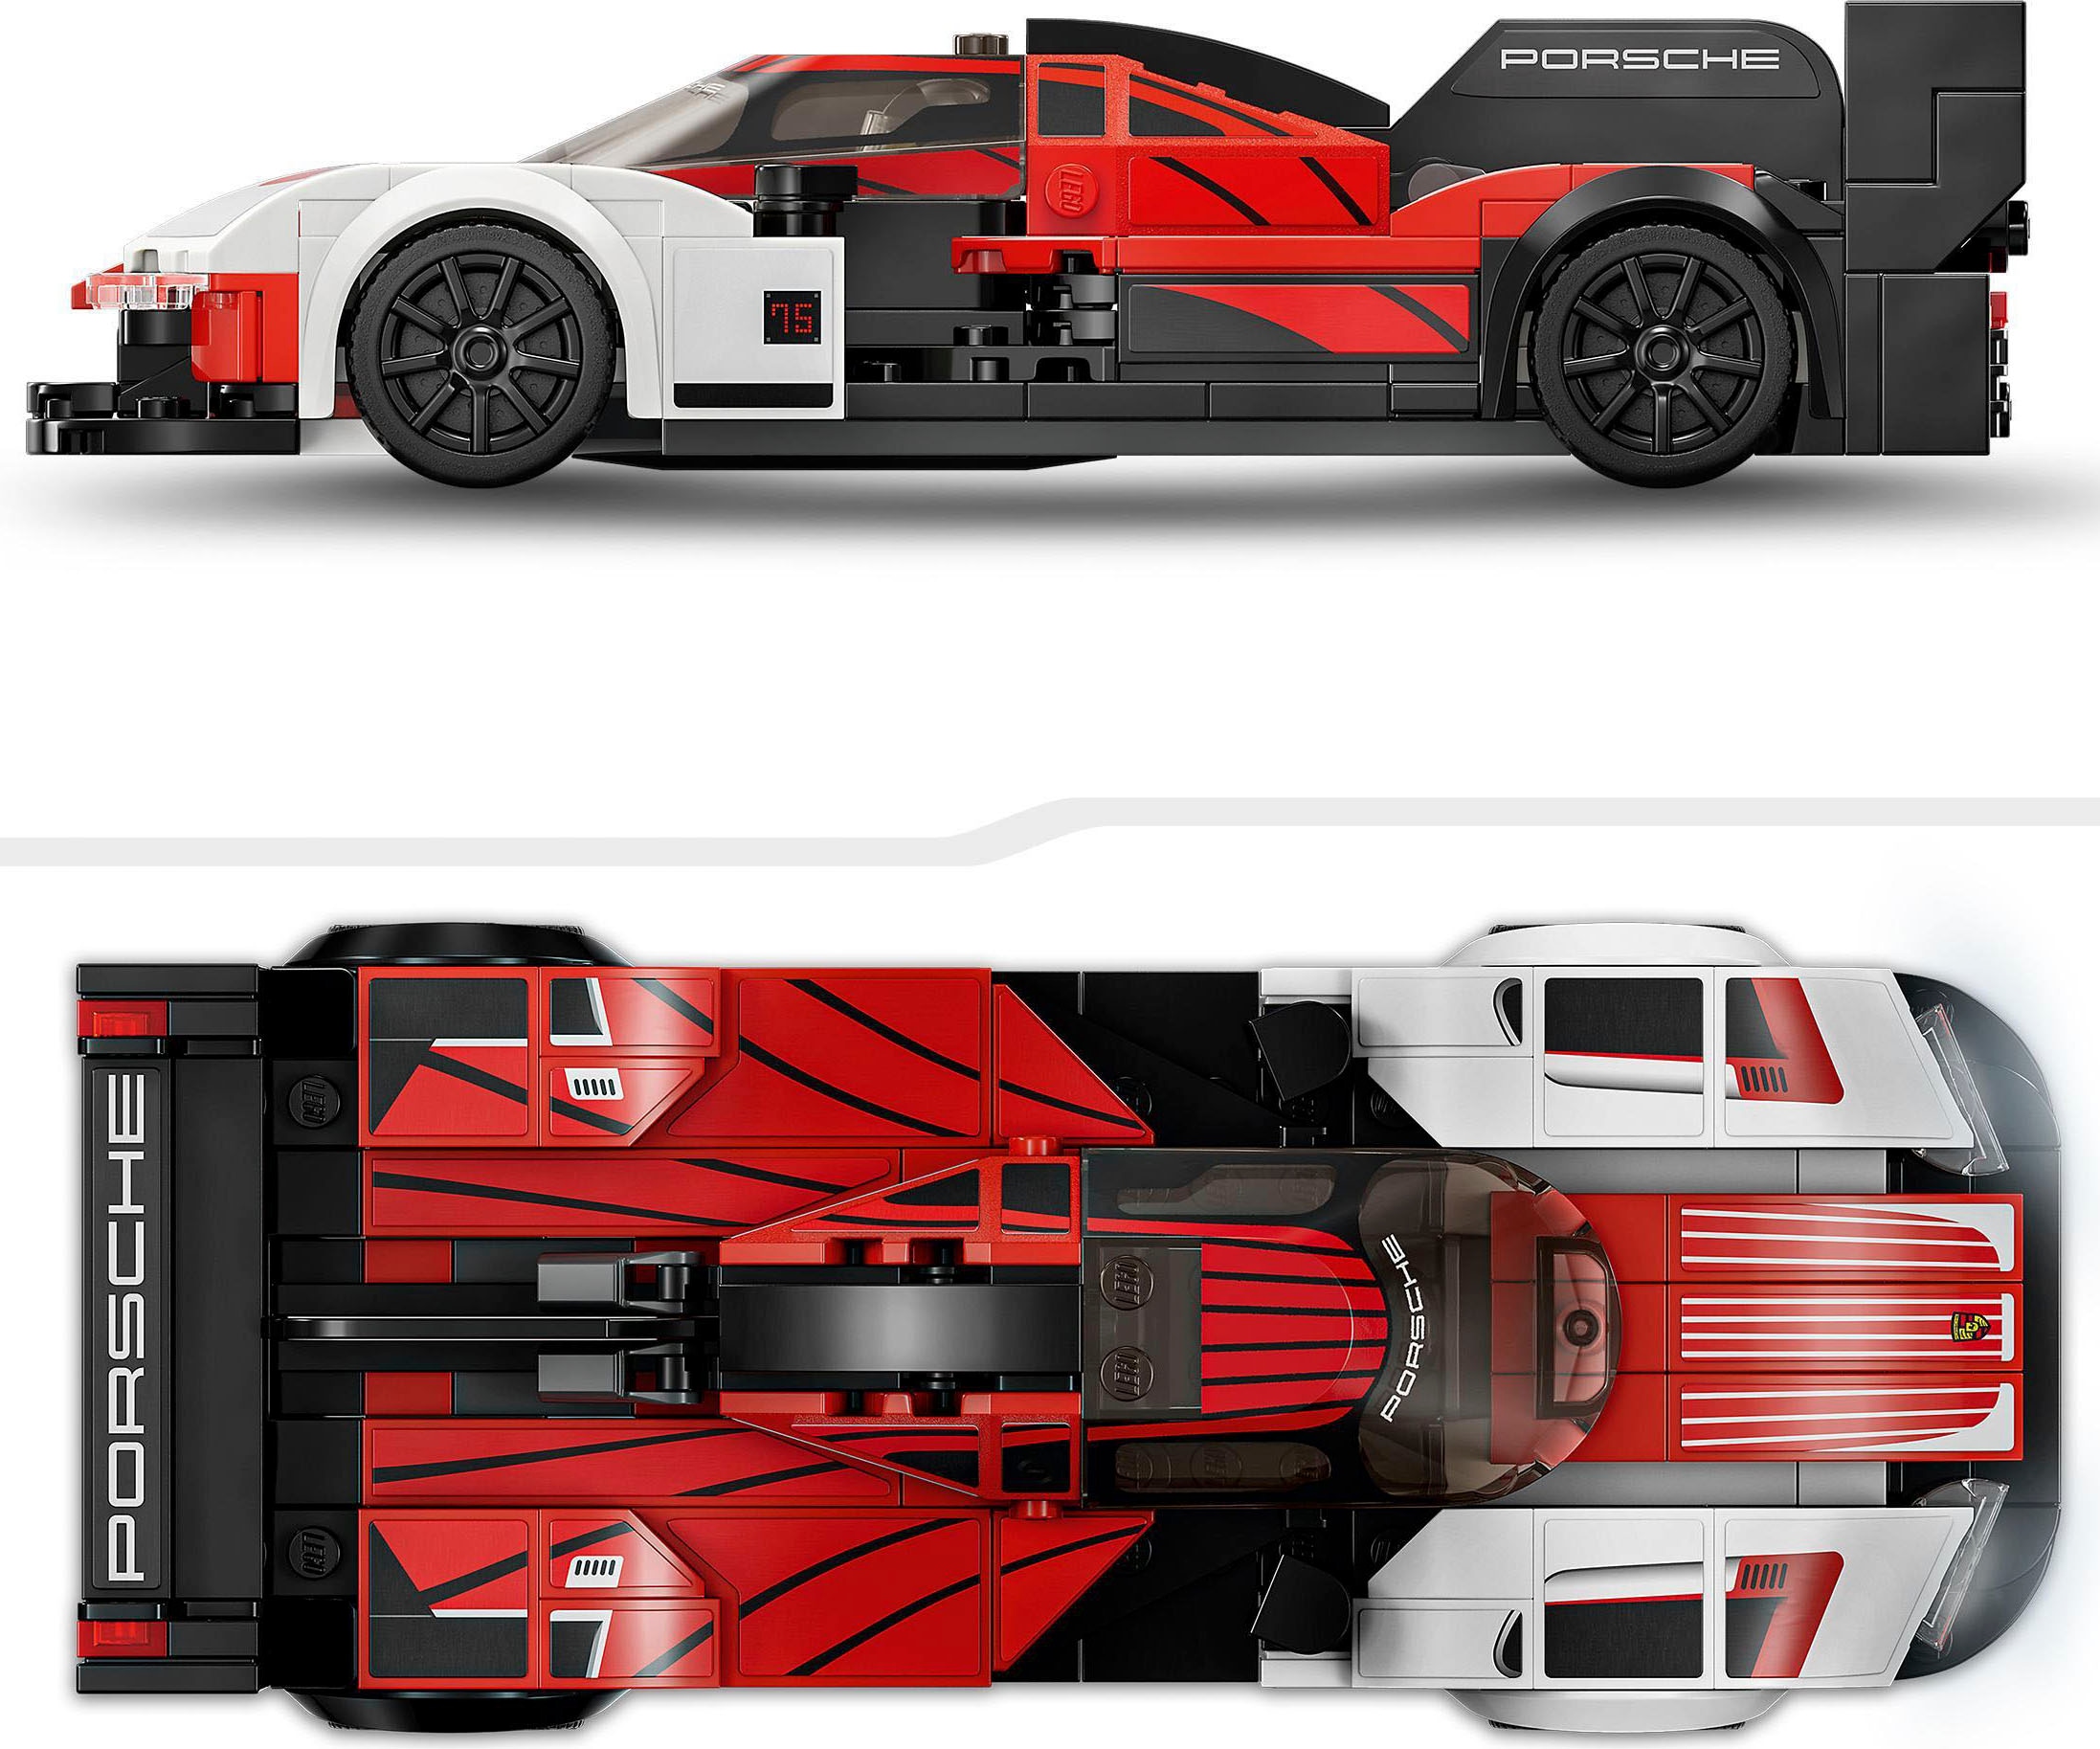 LEGO® Konstruktionsspielsteine »Porsche 963 (76916), LEGO® Speed Champions«, (280 St.)